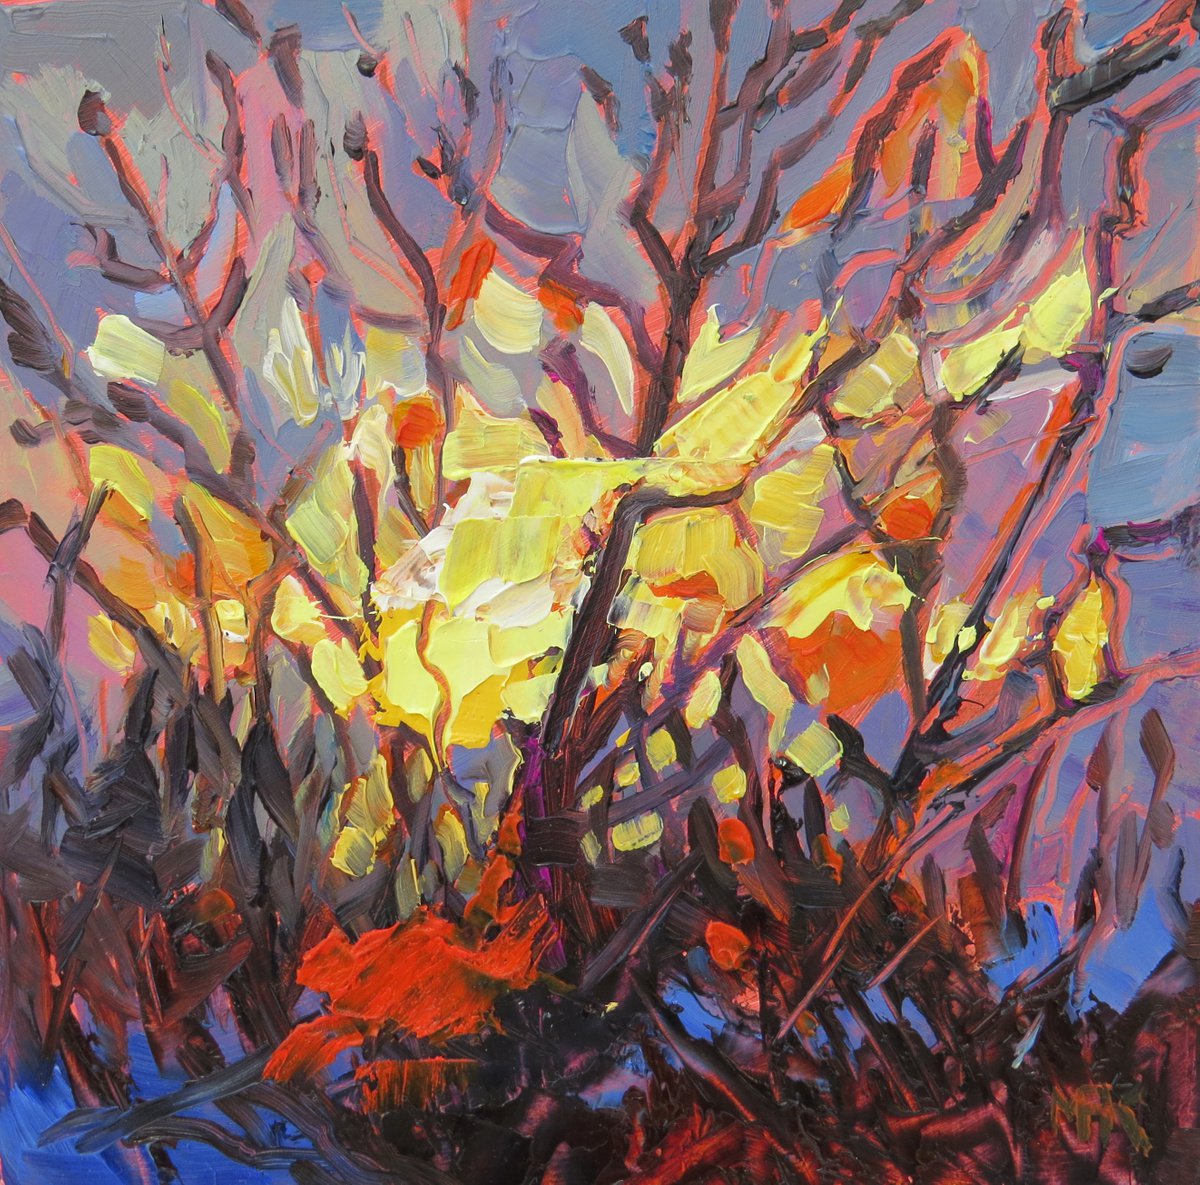 Winter Sun by Mary Kemp